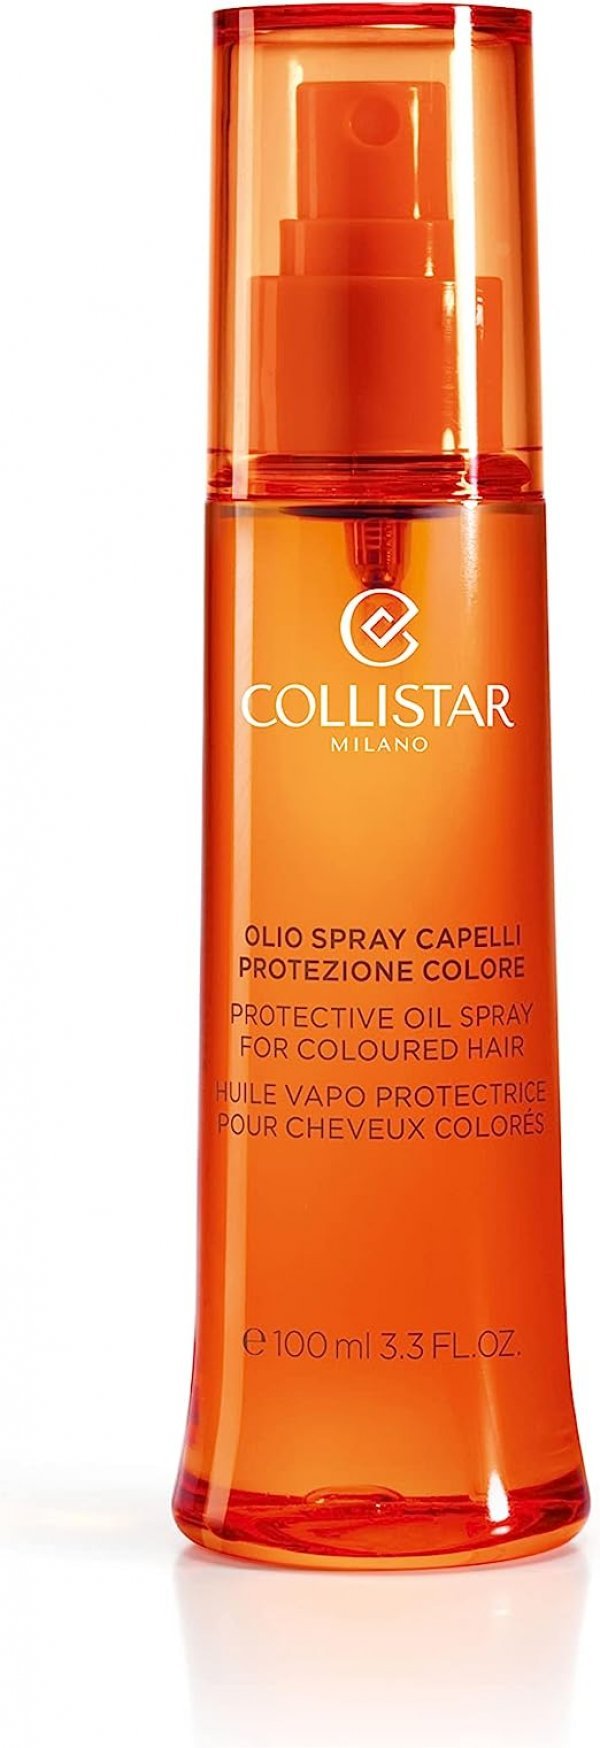 Collistar uljni sprej za zaštitu boje kose. Namijenjen bojanoj i tretiranoj kosi, sunčani filteri prirodno održavaju boju, a sprej nije mastan.